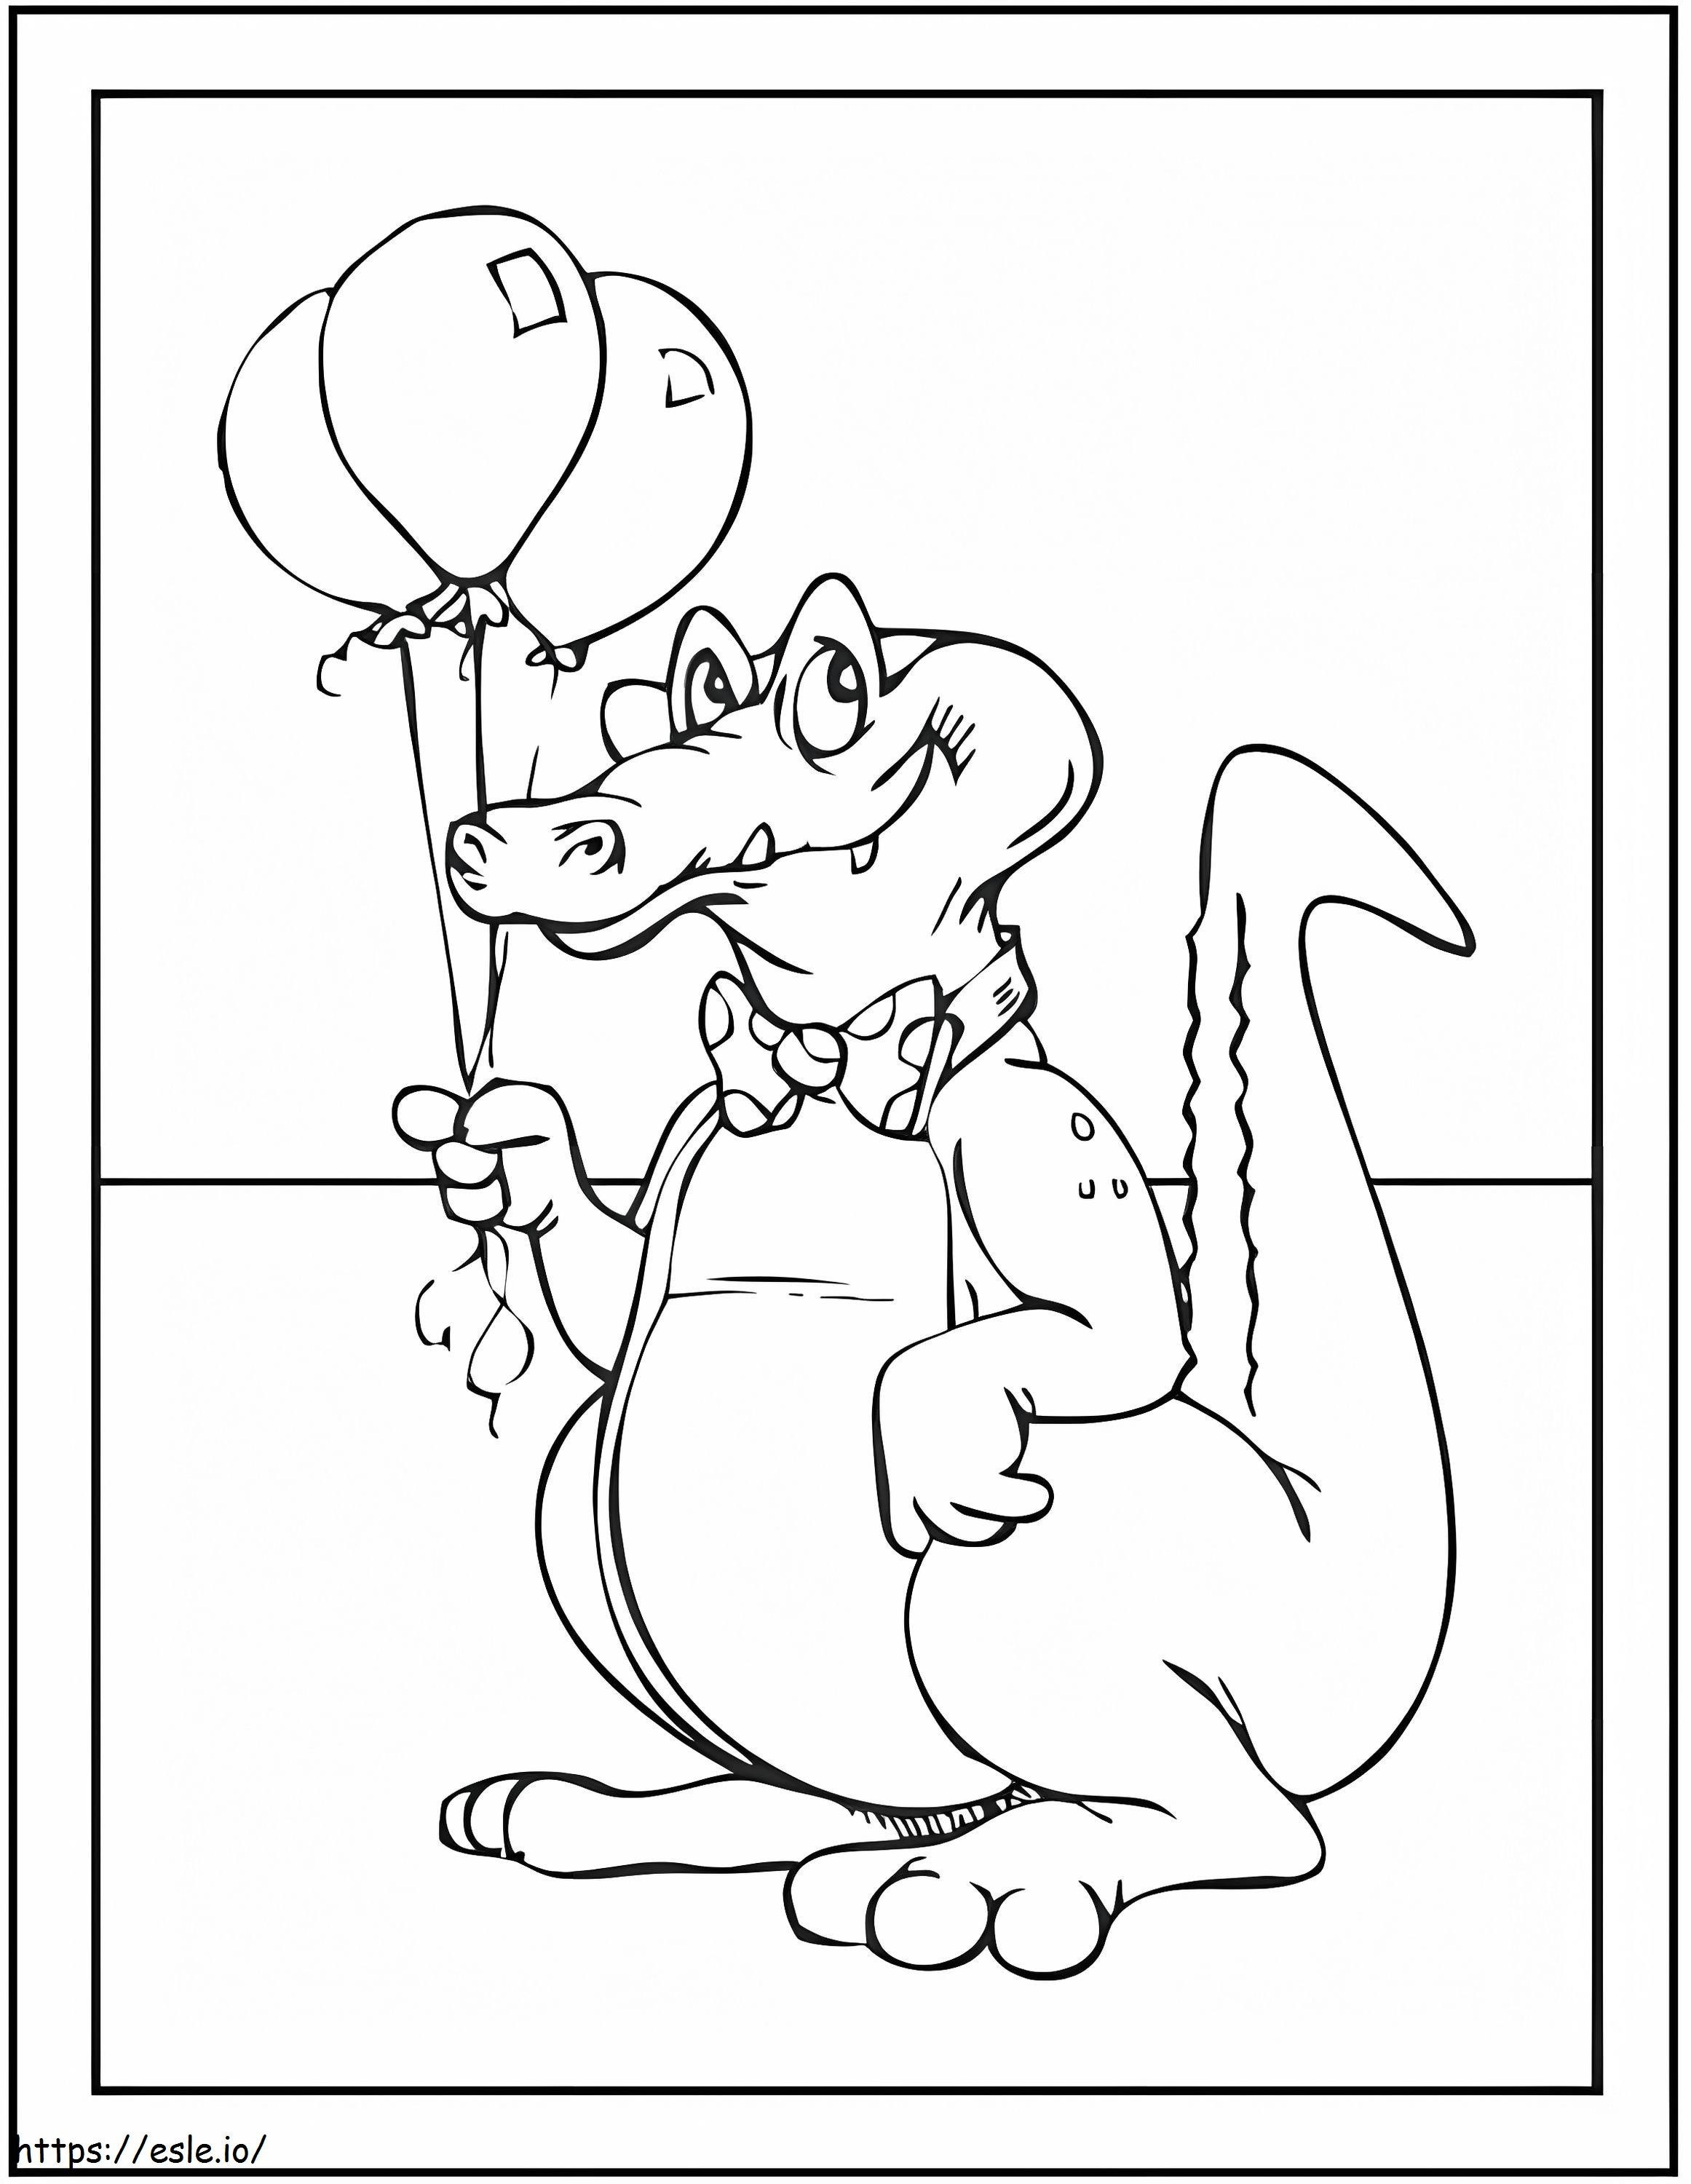 Crocodil ținând baloane de colorat